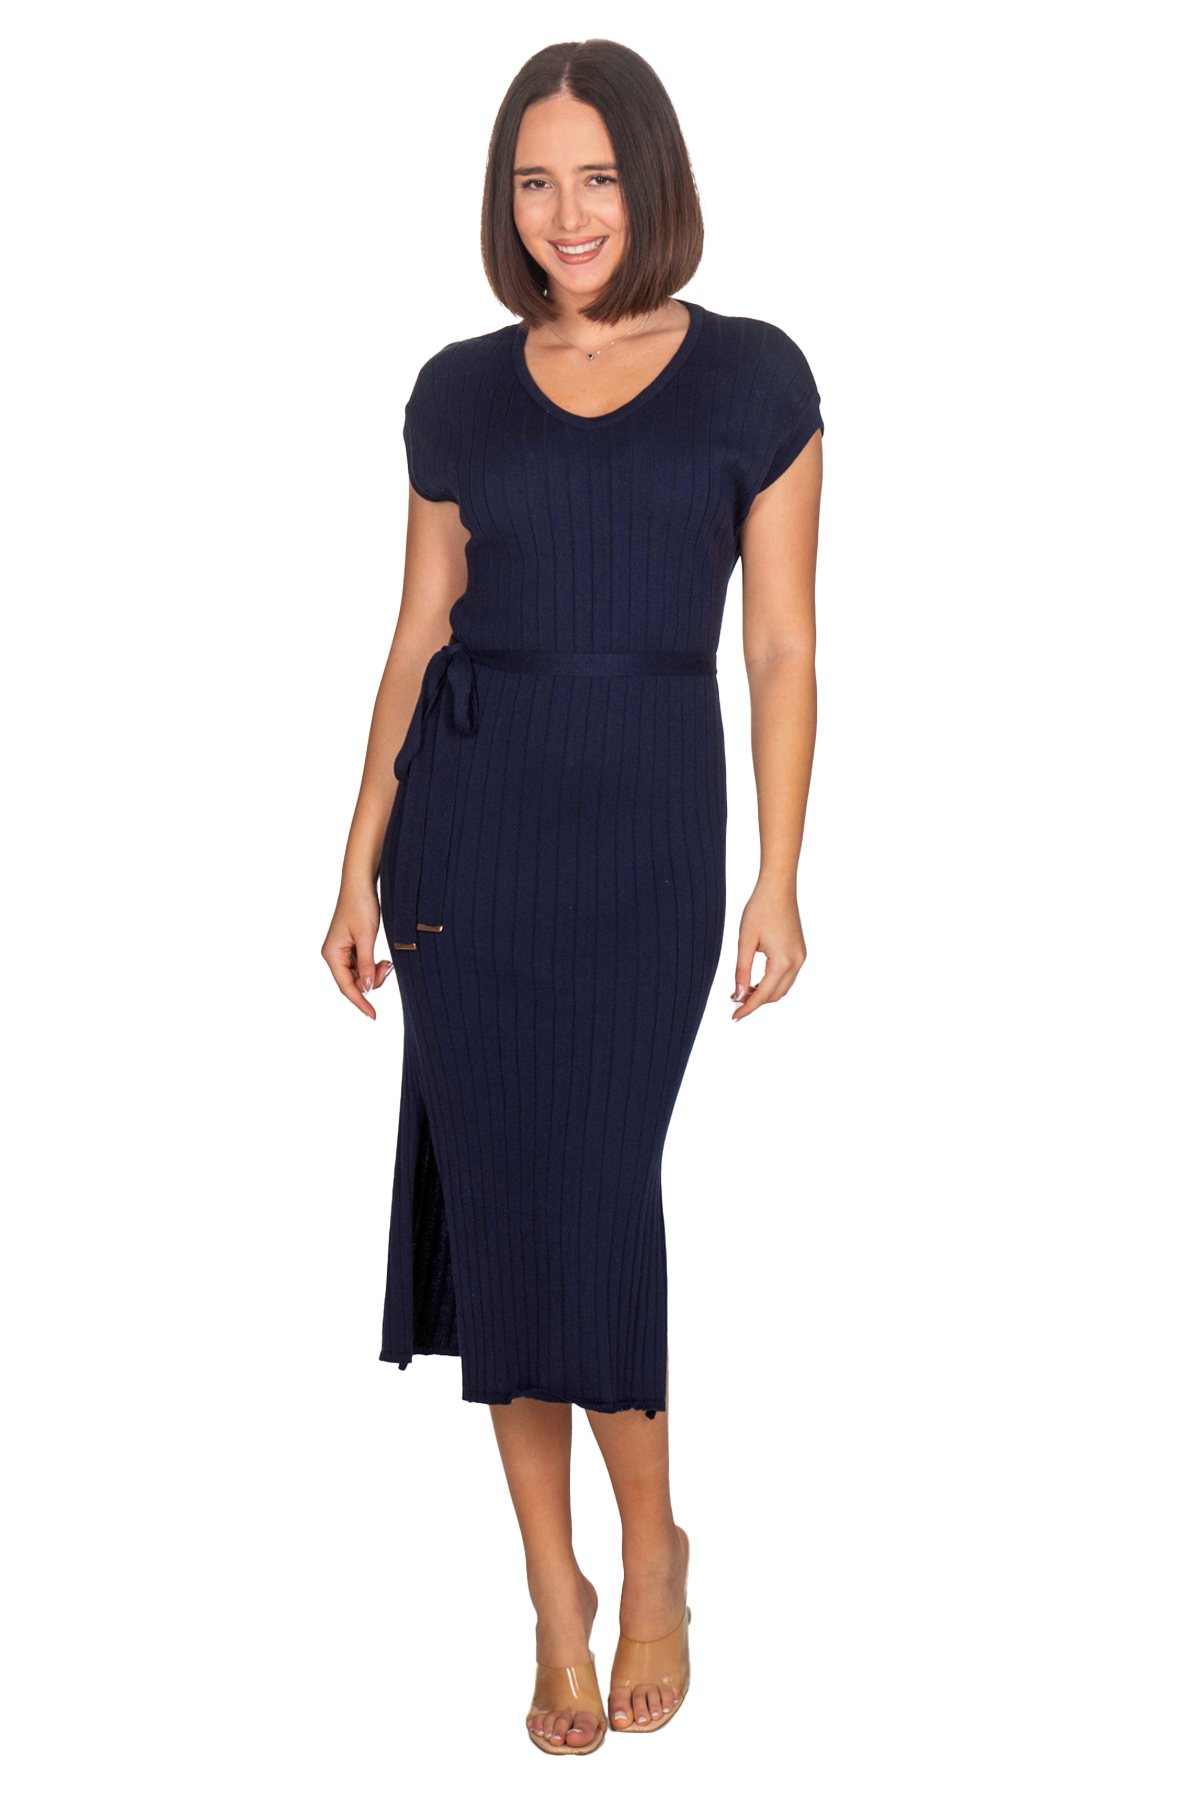 Φόρεμα με πλέξη ριπ ,100% βαμβακερό - Μπλε 13104